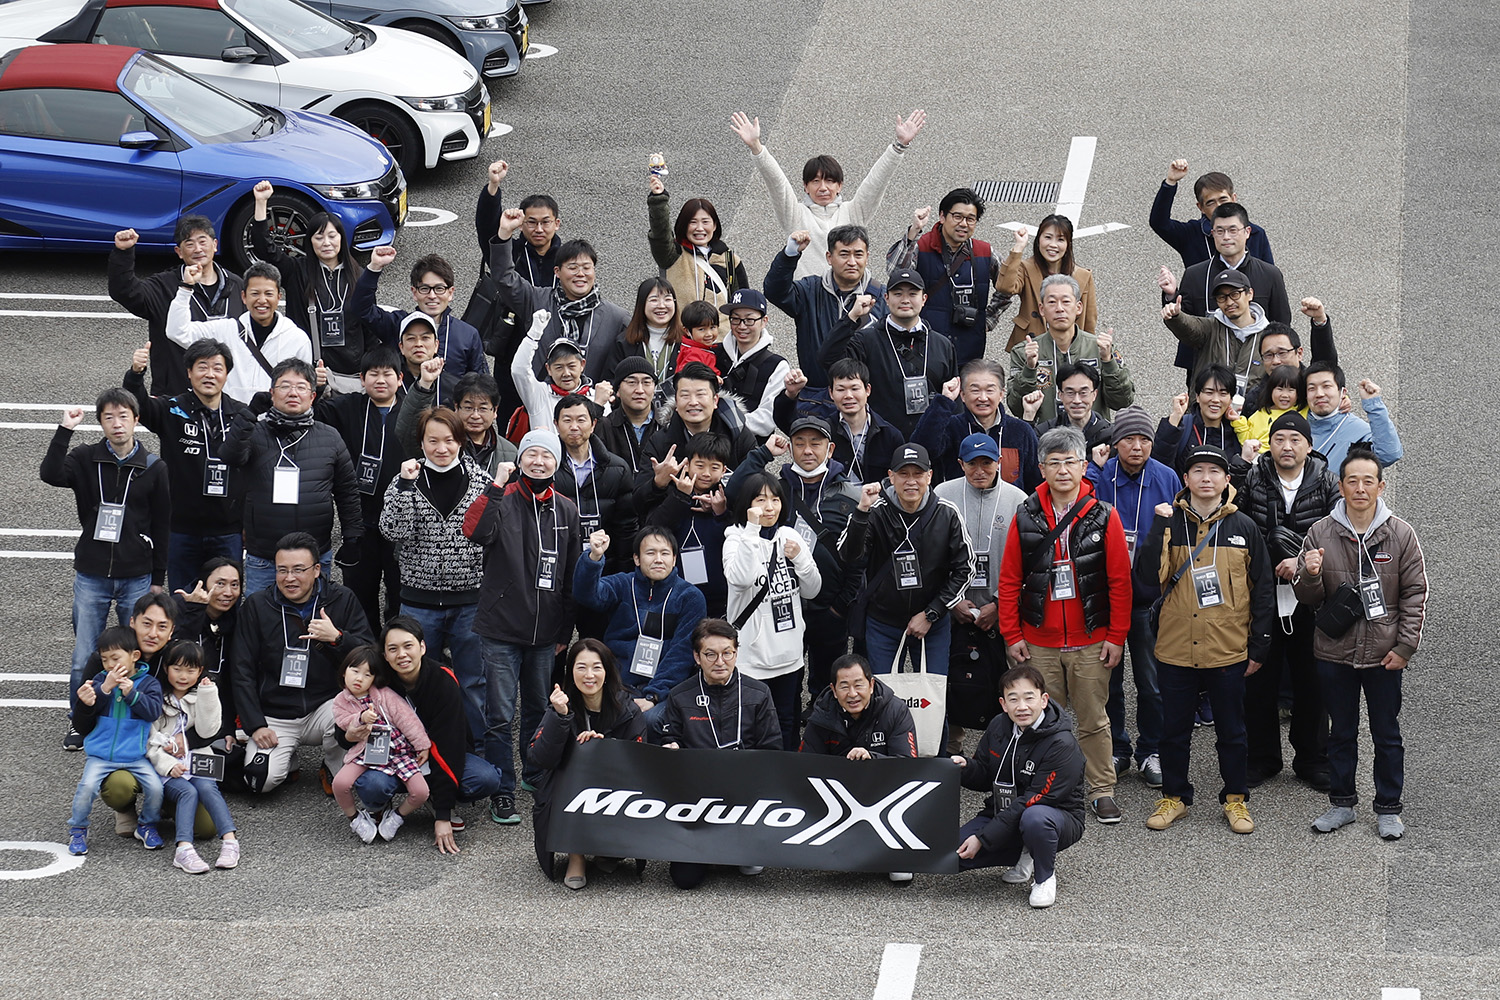 モデューロX10周年記念モーニングクルーズ参加者集合写真 〜 画像43